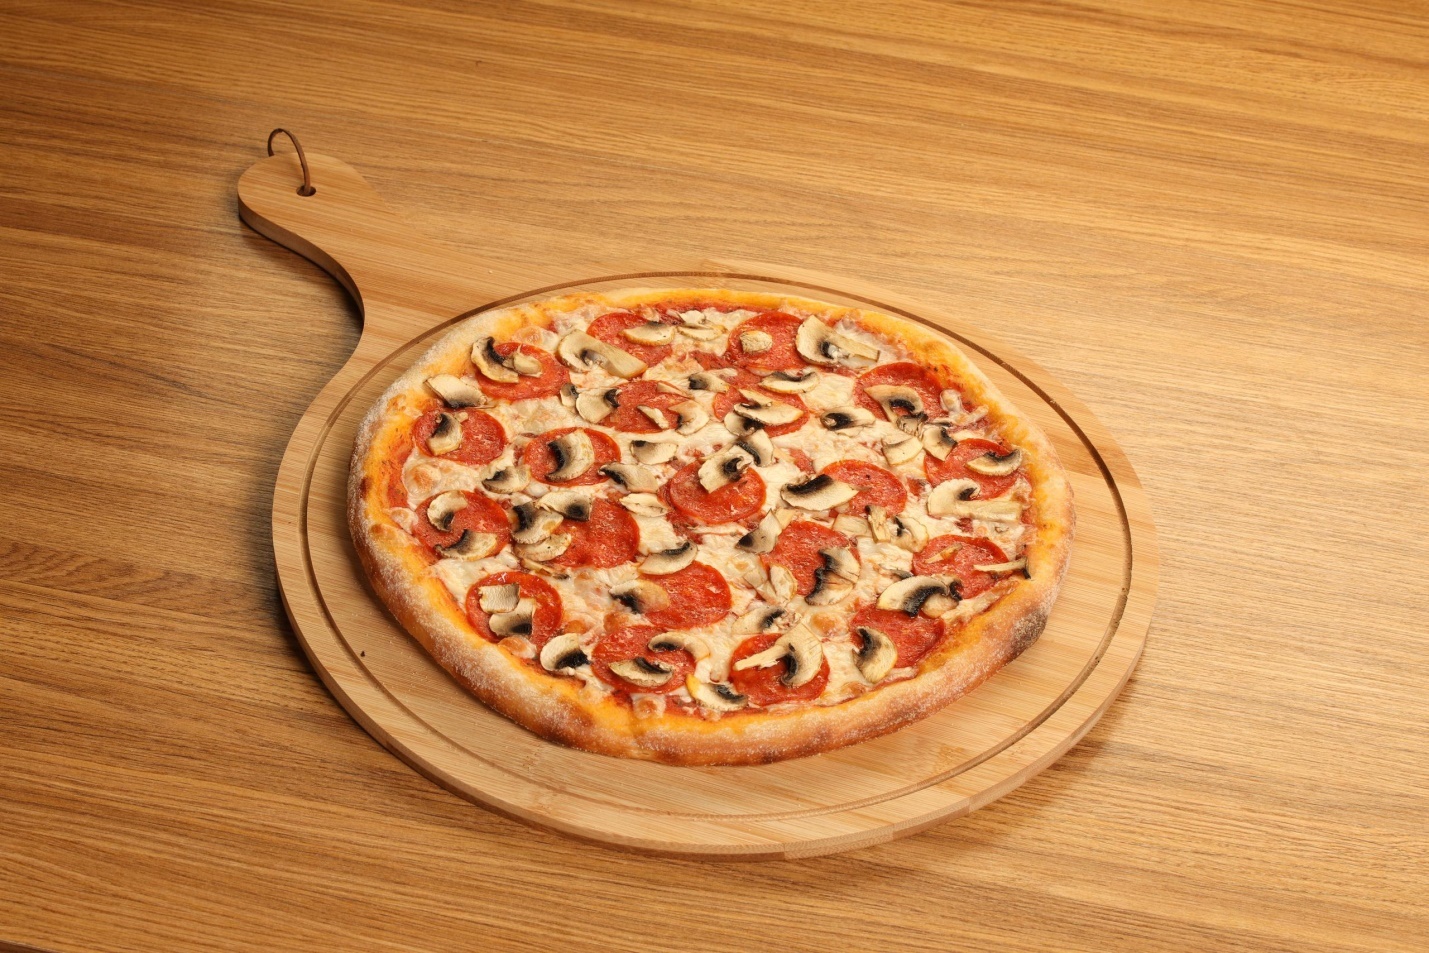 пепперони это что такое в пицце фото 21